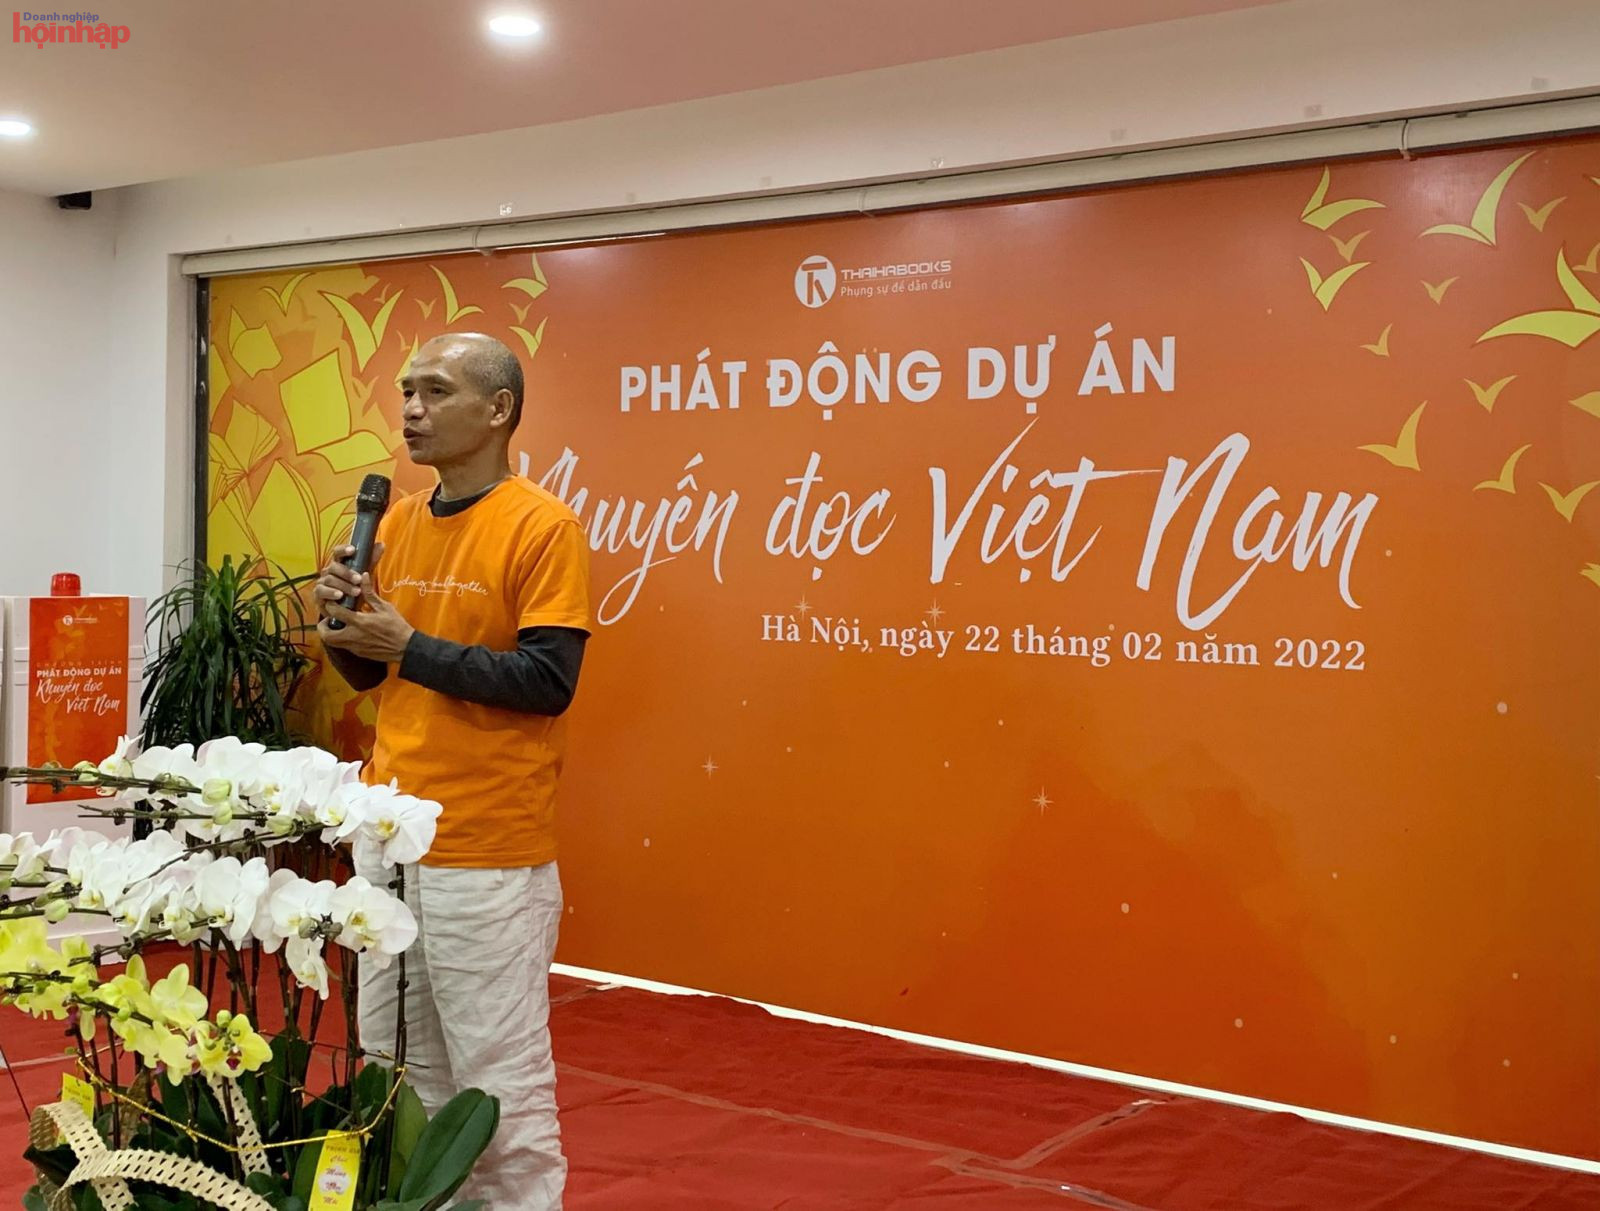 TS. Nguyễn Mạnh Hùng - người sáng lập, Chủ tịch HĐQT Thái Hà Books đã có những chia sẽ tâm huyết cho văn hóa đọc, khuyến đọc